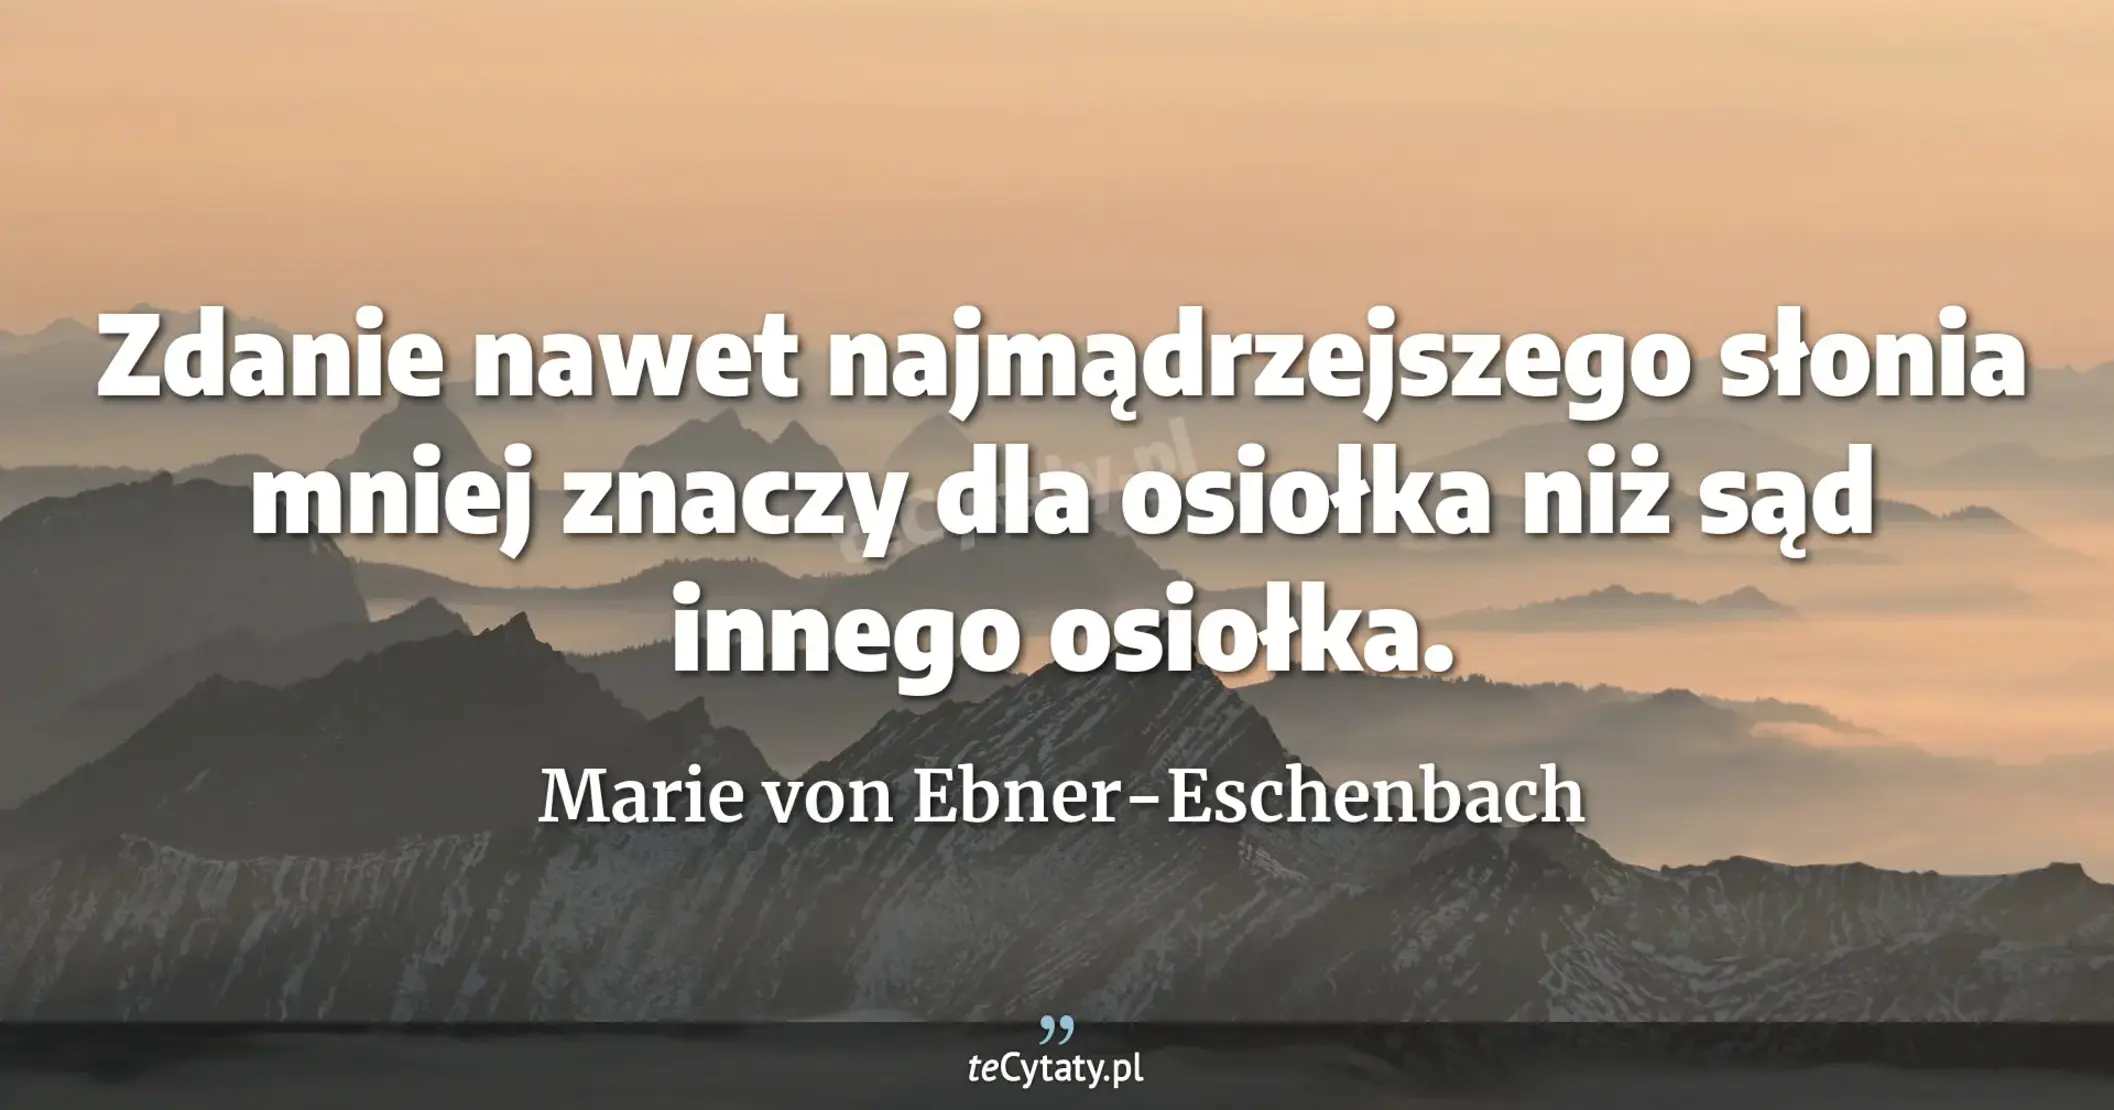 Zdanie nawet najmądrzejszego słonia mniej znaczy dla osiołka niż sąd innego osiołka. - Marie von Ebner-Eschenbach